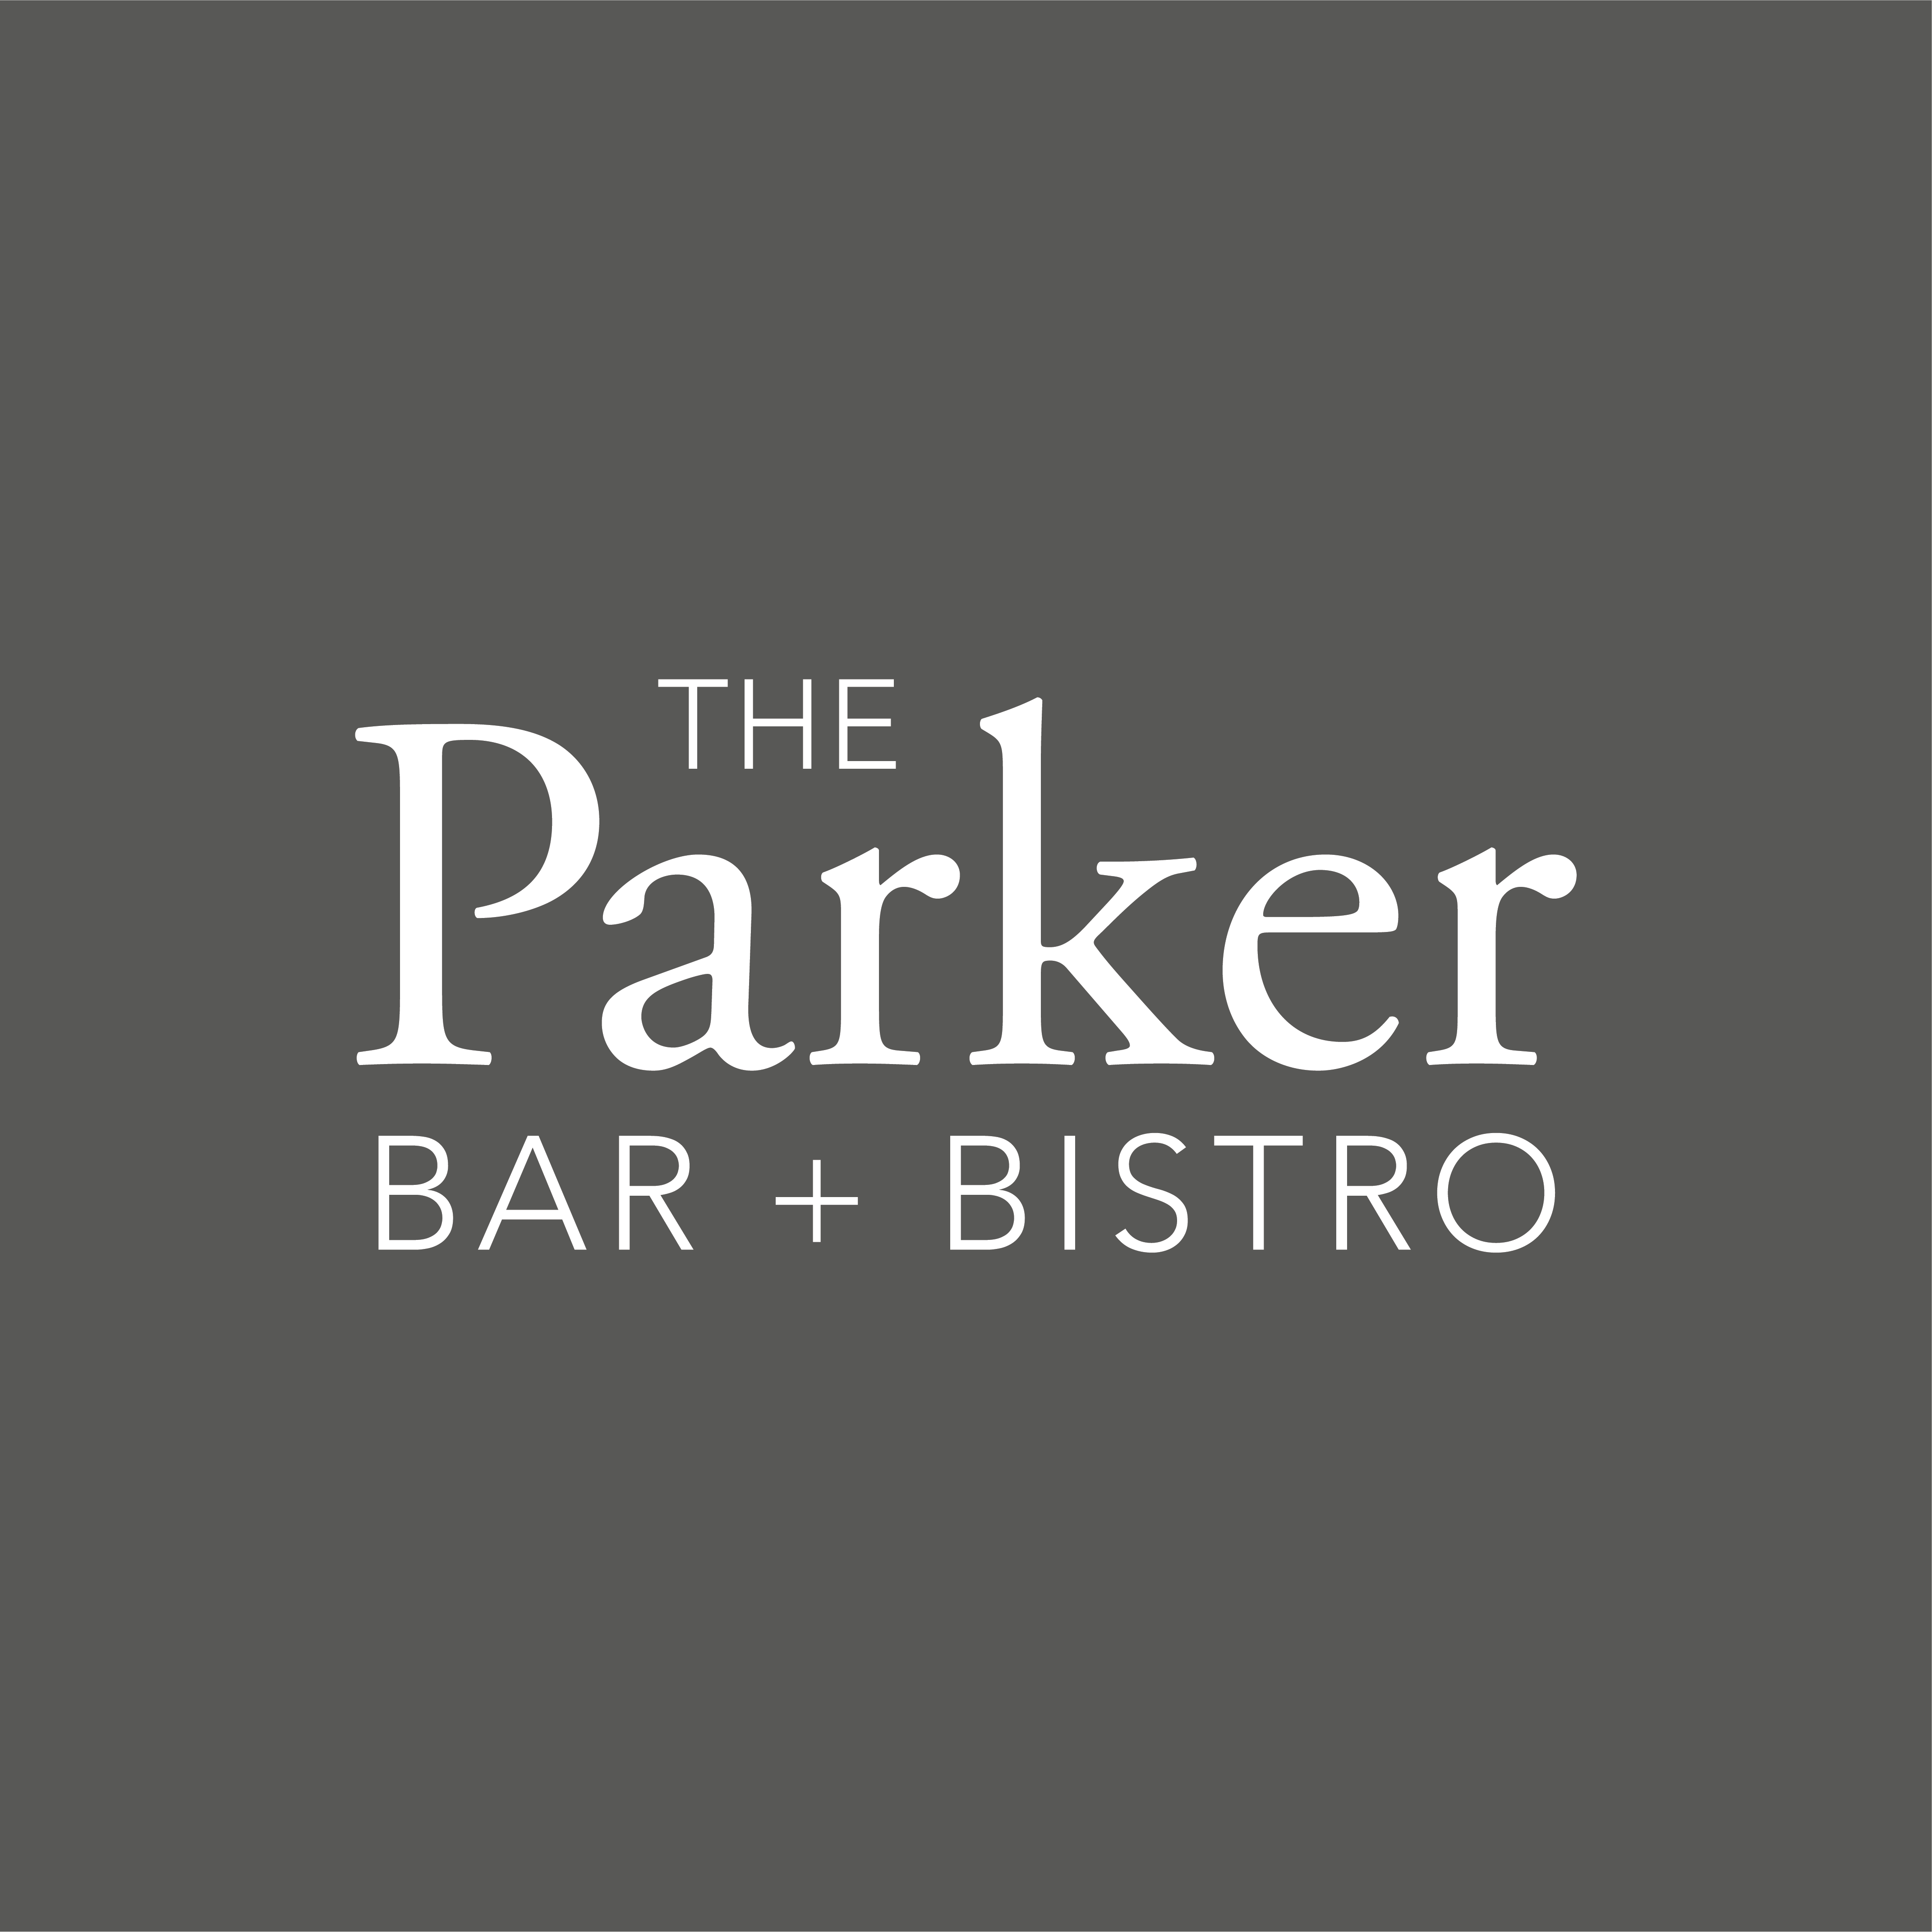 The Parker Bar + Bistro Final Logo